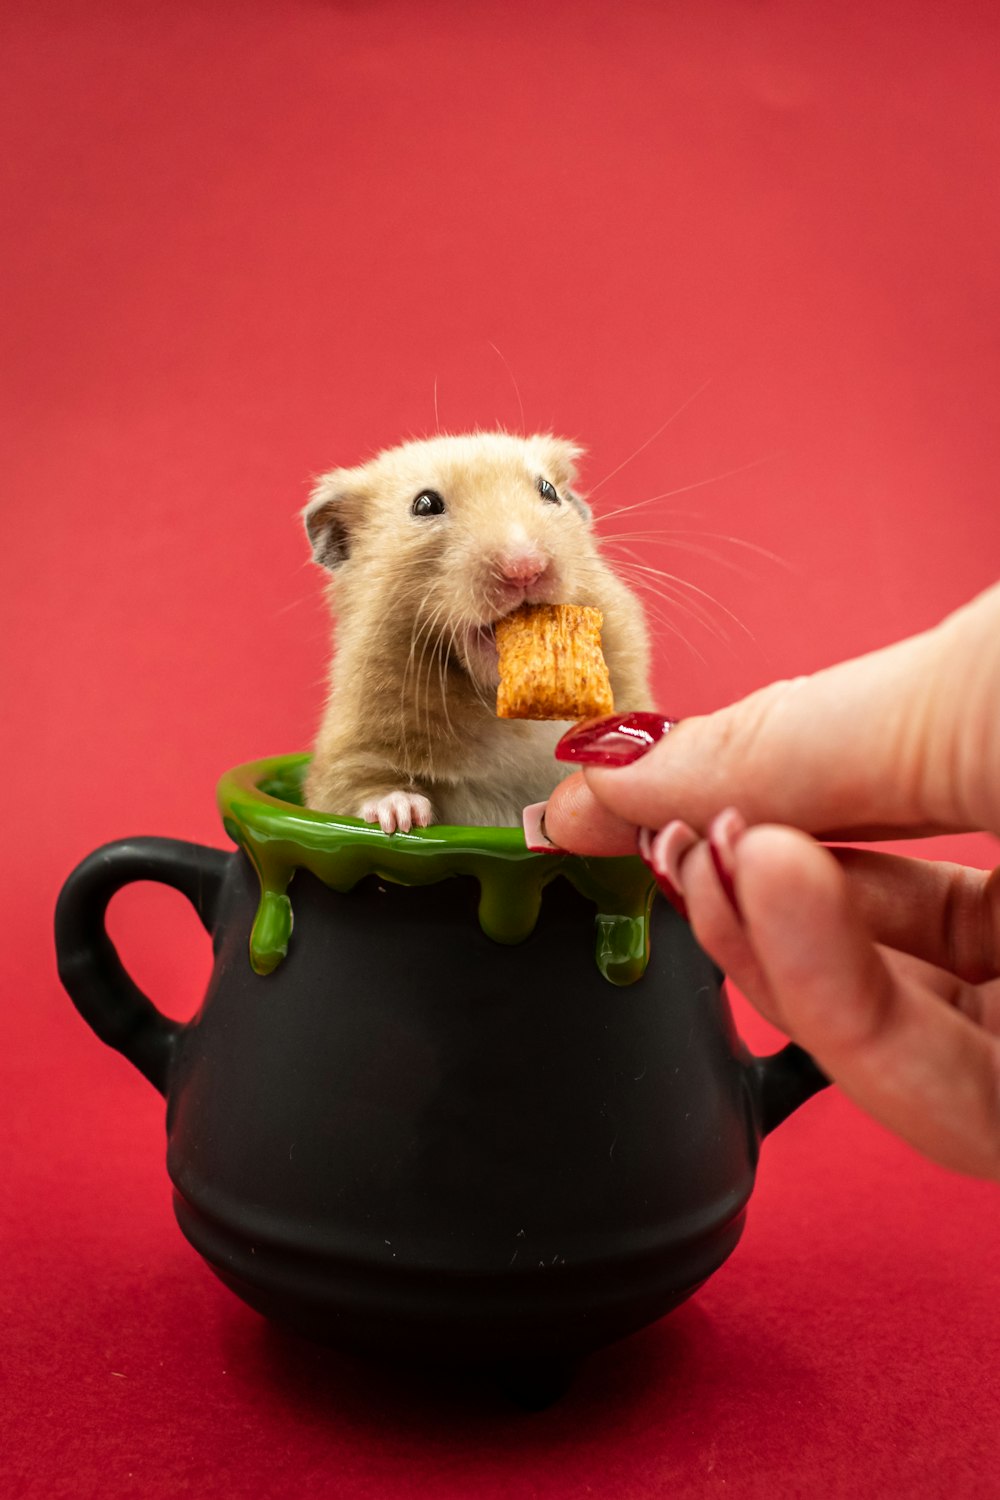 Ein Hamster isst ein Stück Essen in einem Topf